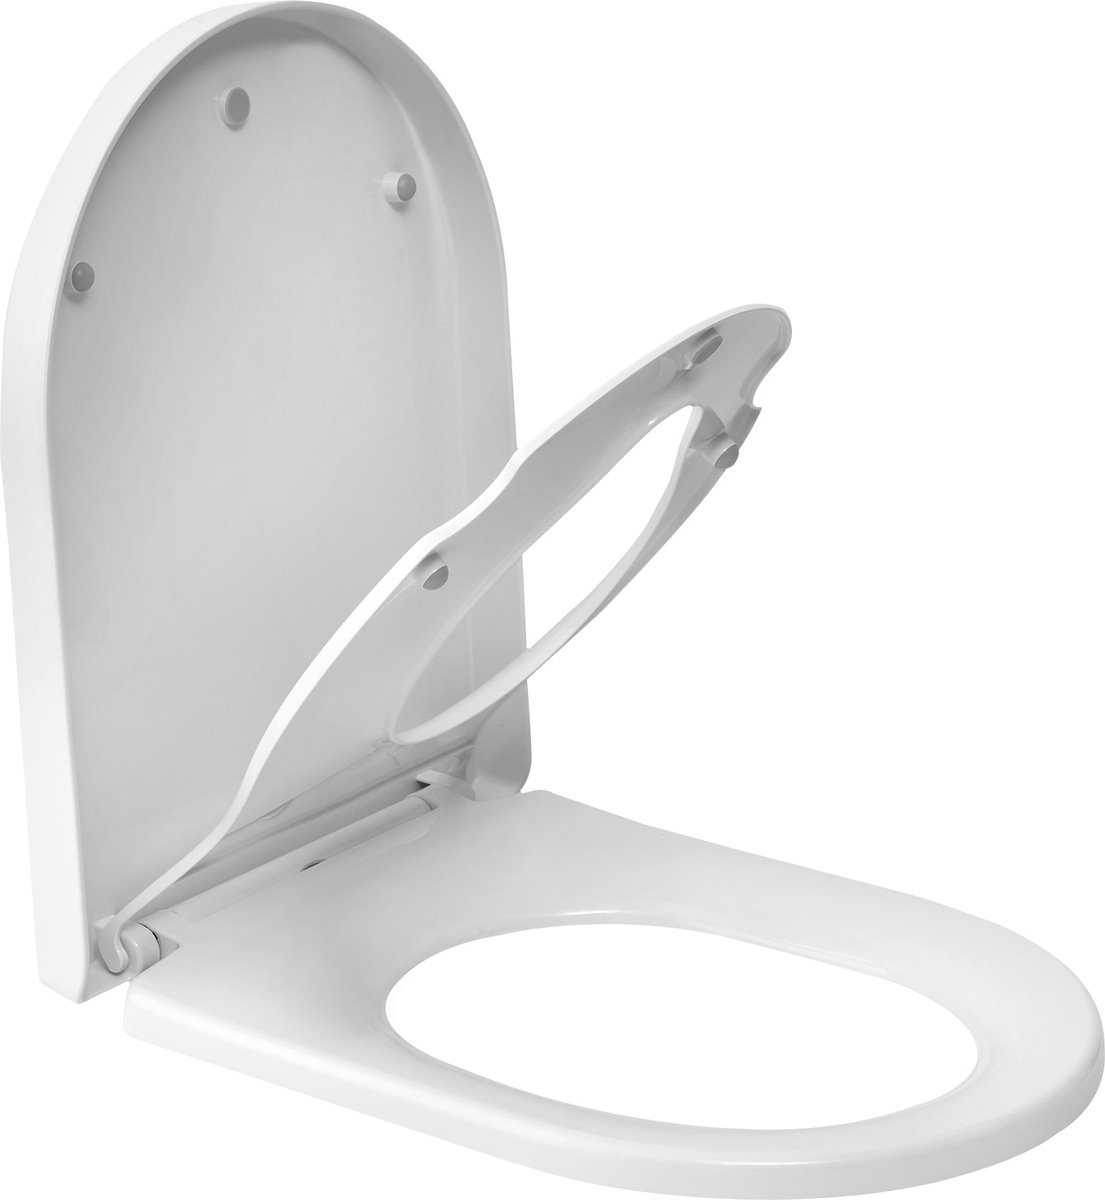 Kamyra® Antibacteriële Toiletbril met Verkleiner & Softclose - Voor Volwassenen/Kinderen - Toiletbrillen, WC Bril, Brillen, Toiletzitting - D-Vorm - 45.4x36.1 cm - Wit